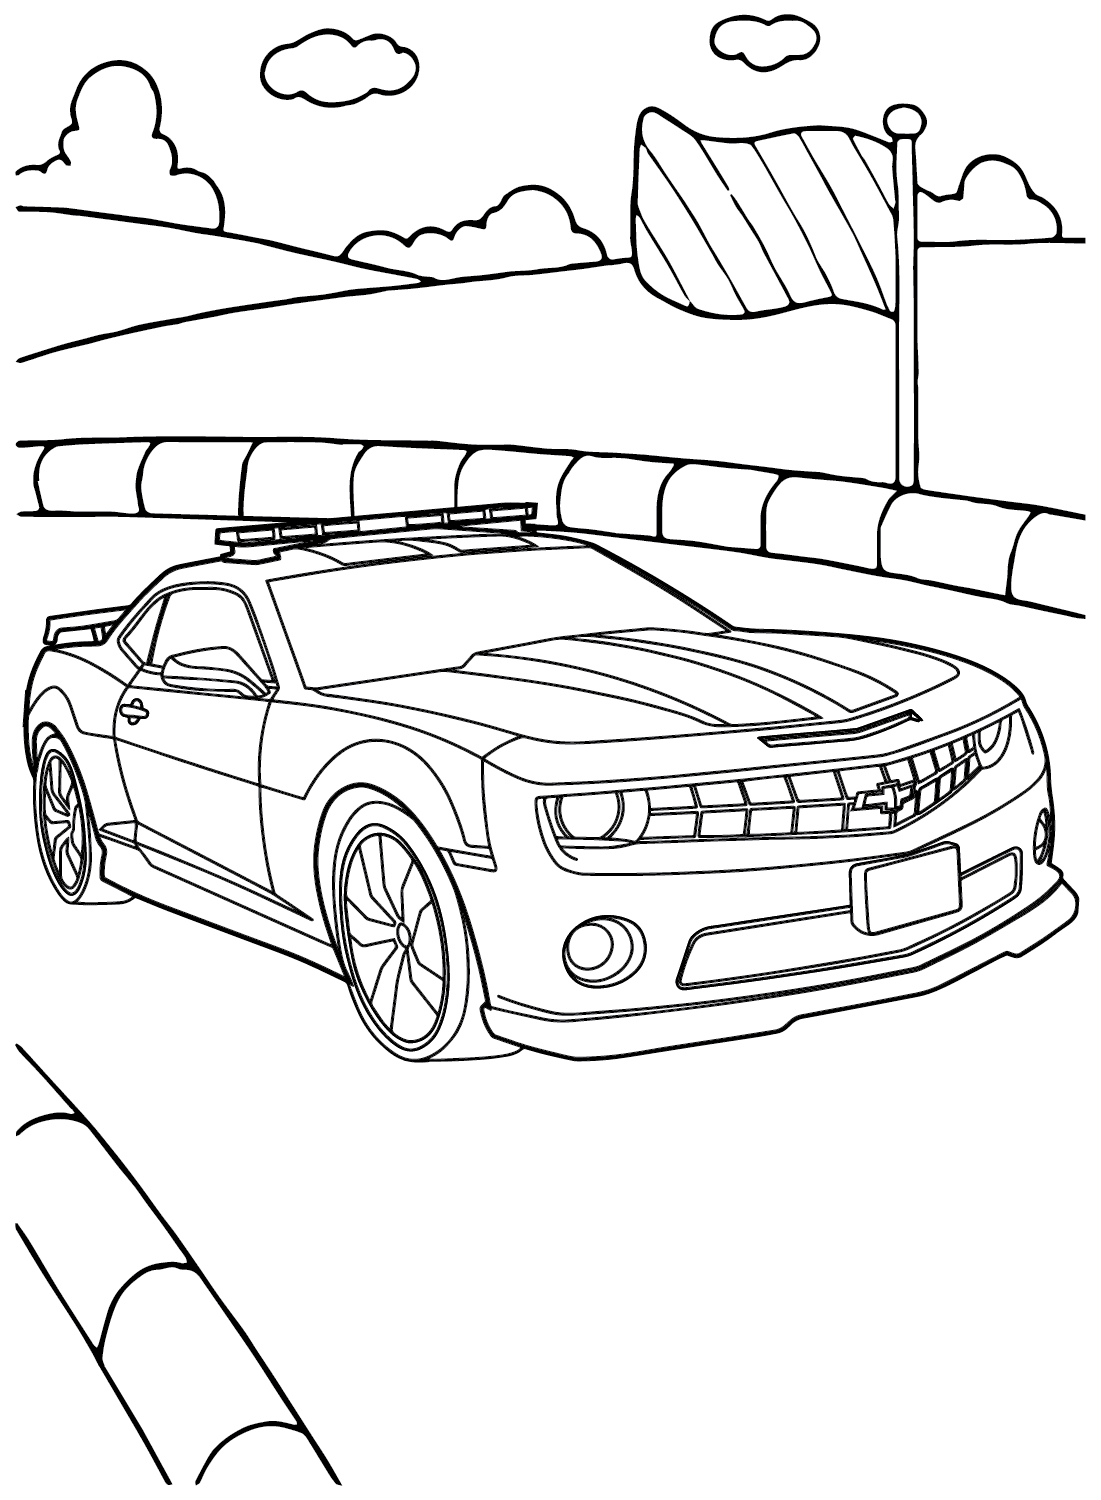 Página para colorear de Chevrolet Camaro Racing Car de Chevrolet